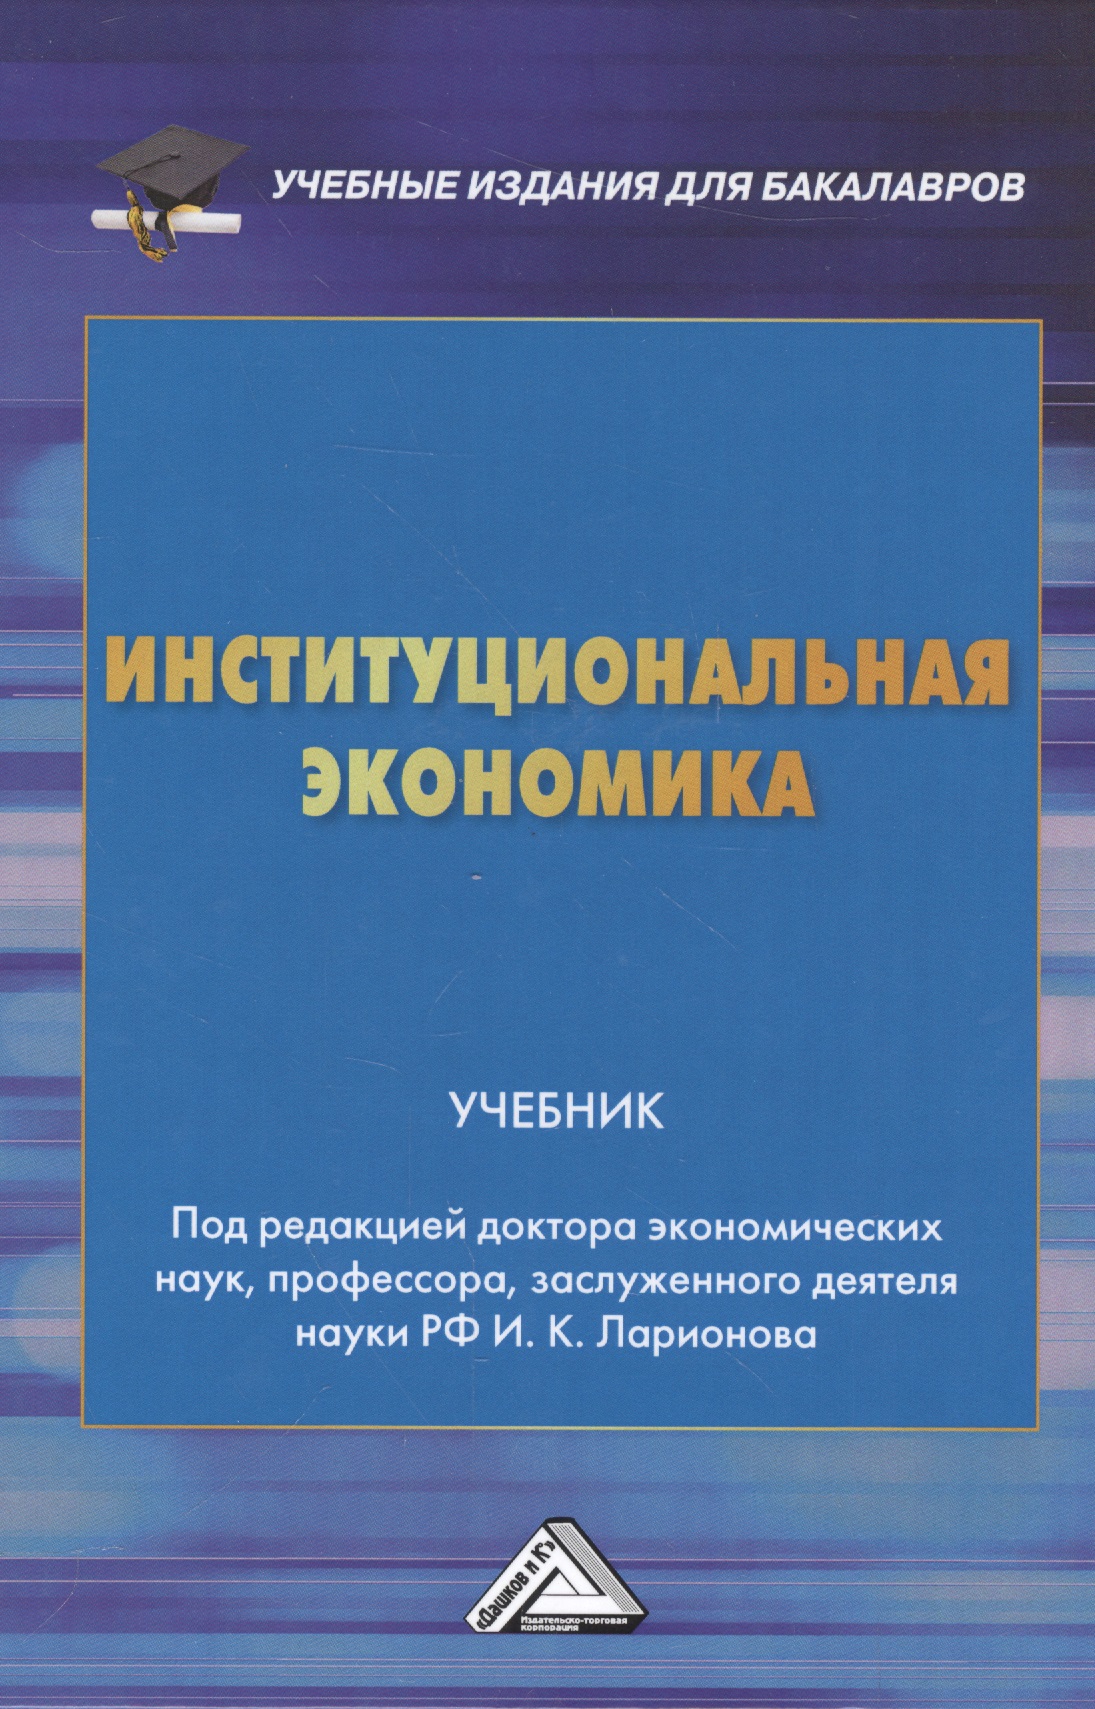 Институциональная экономика: Учебник для бакалавров носова светлана сергеевна институциональная экономика бакалавриат учебник